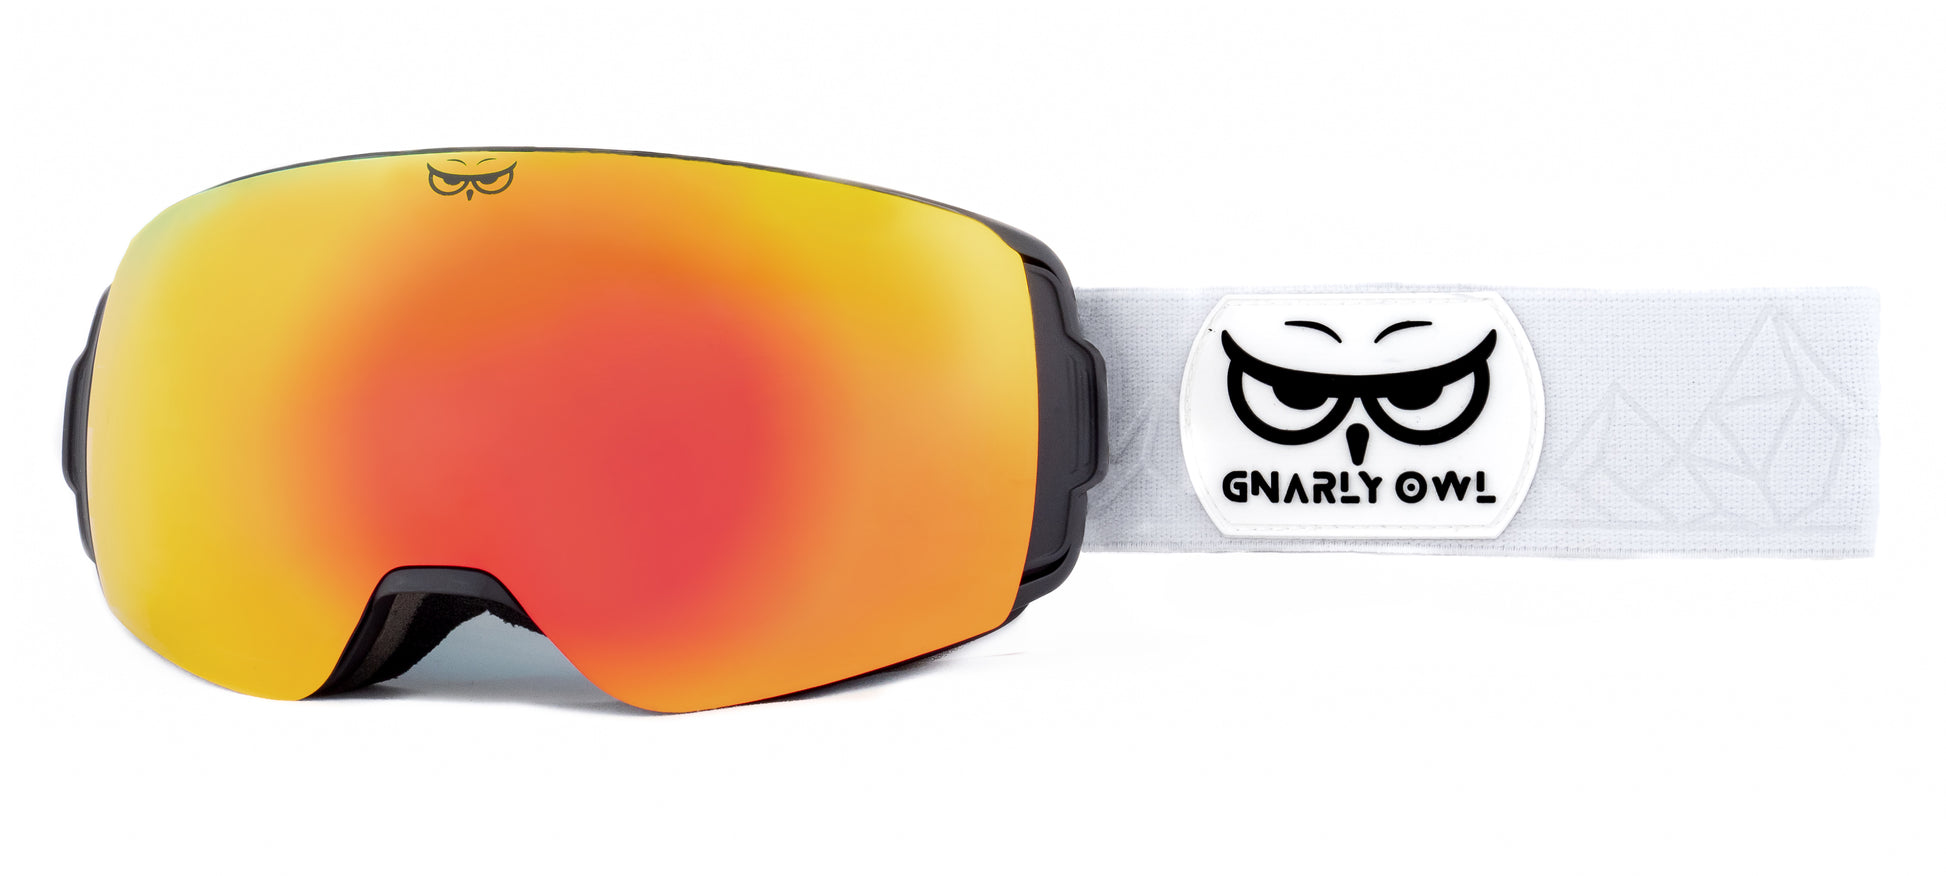 Gnarly Owl polarizační lyžařské snowboardové skialpové splitboardové brýle česká značka červený zrcadlový REVO zorník bílý pásek dámské pánské brýle malý obličej magnetické zorníky